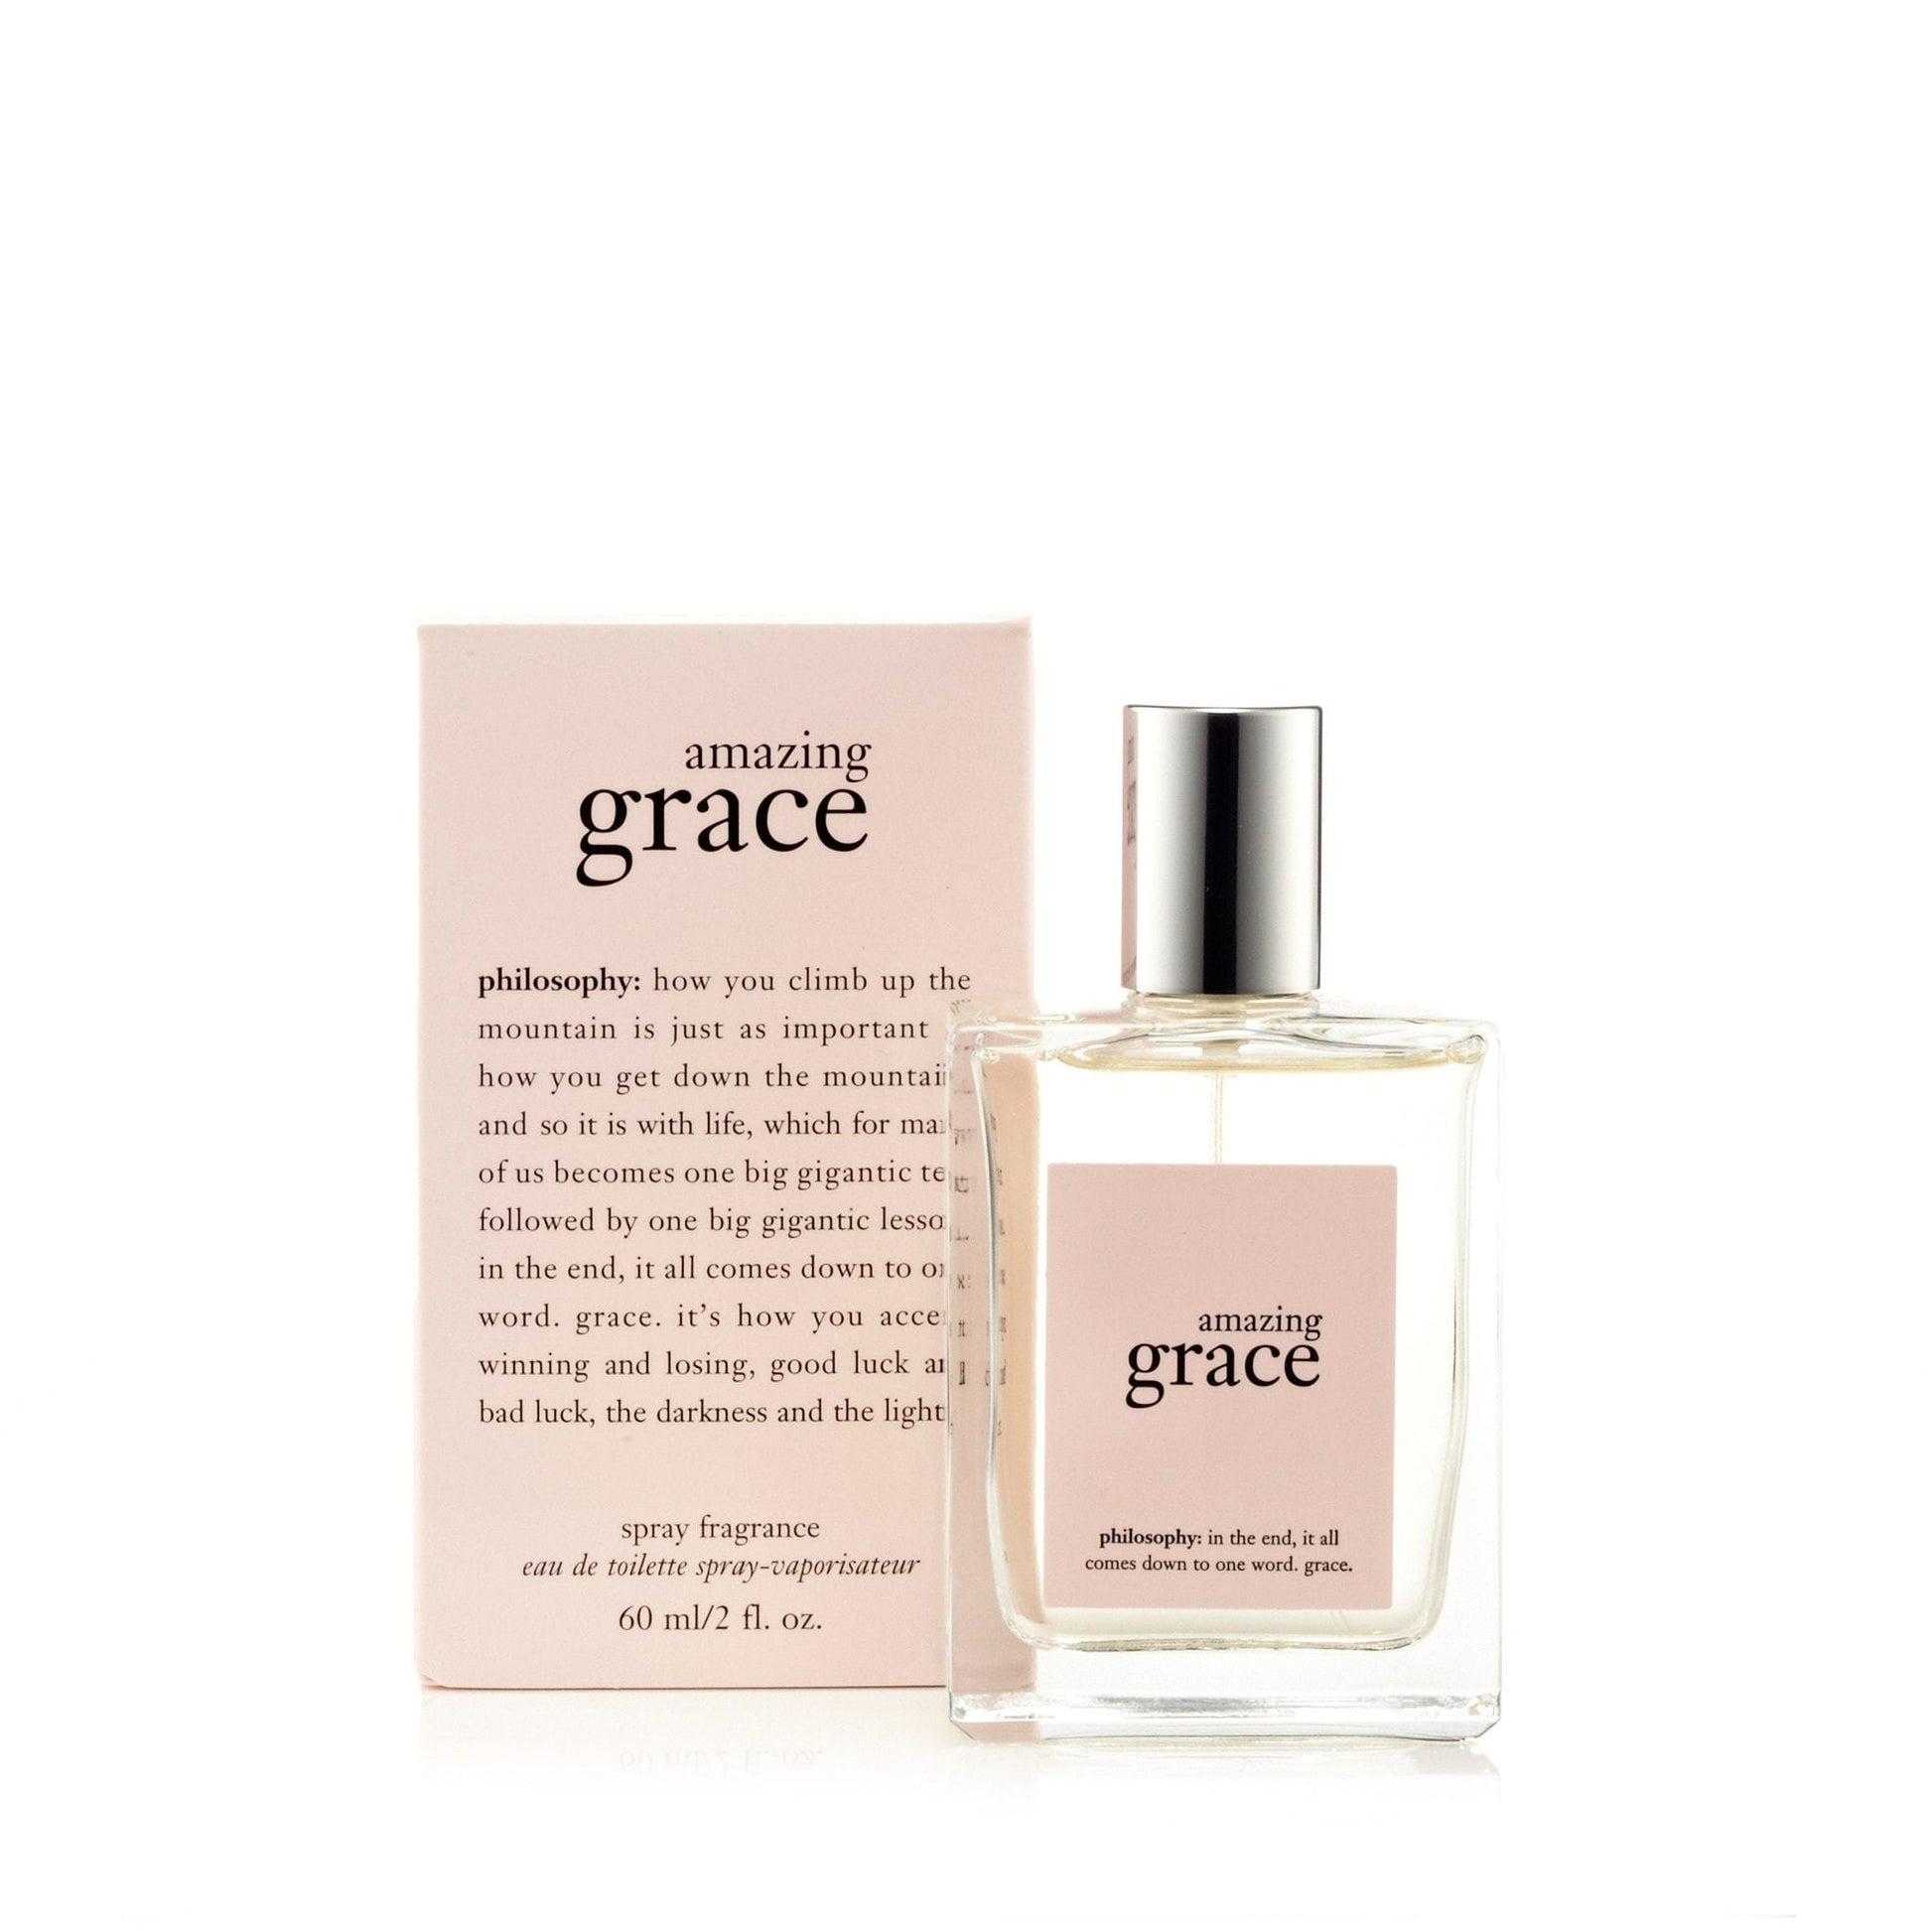 Amazing Grace Eau de Toilette Spray for Women by Philosophy, Product image 1